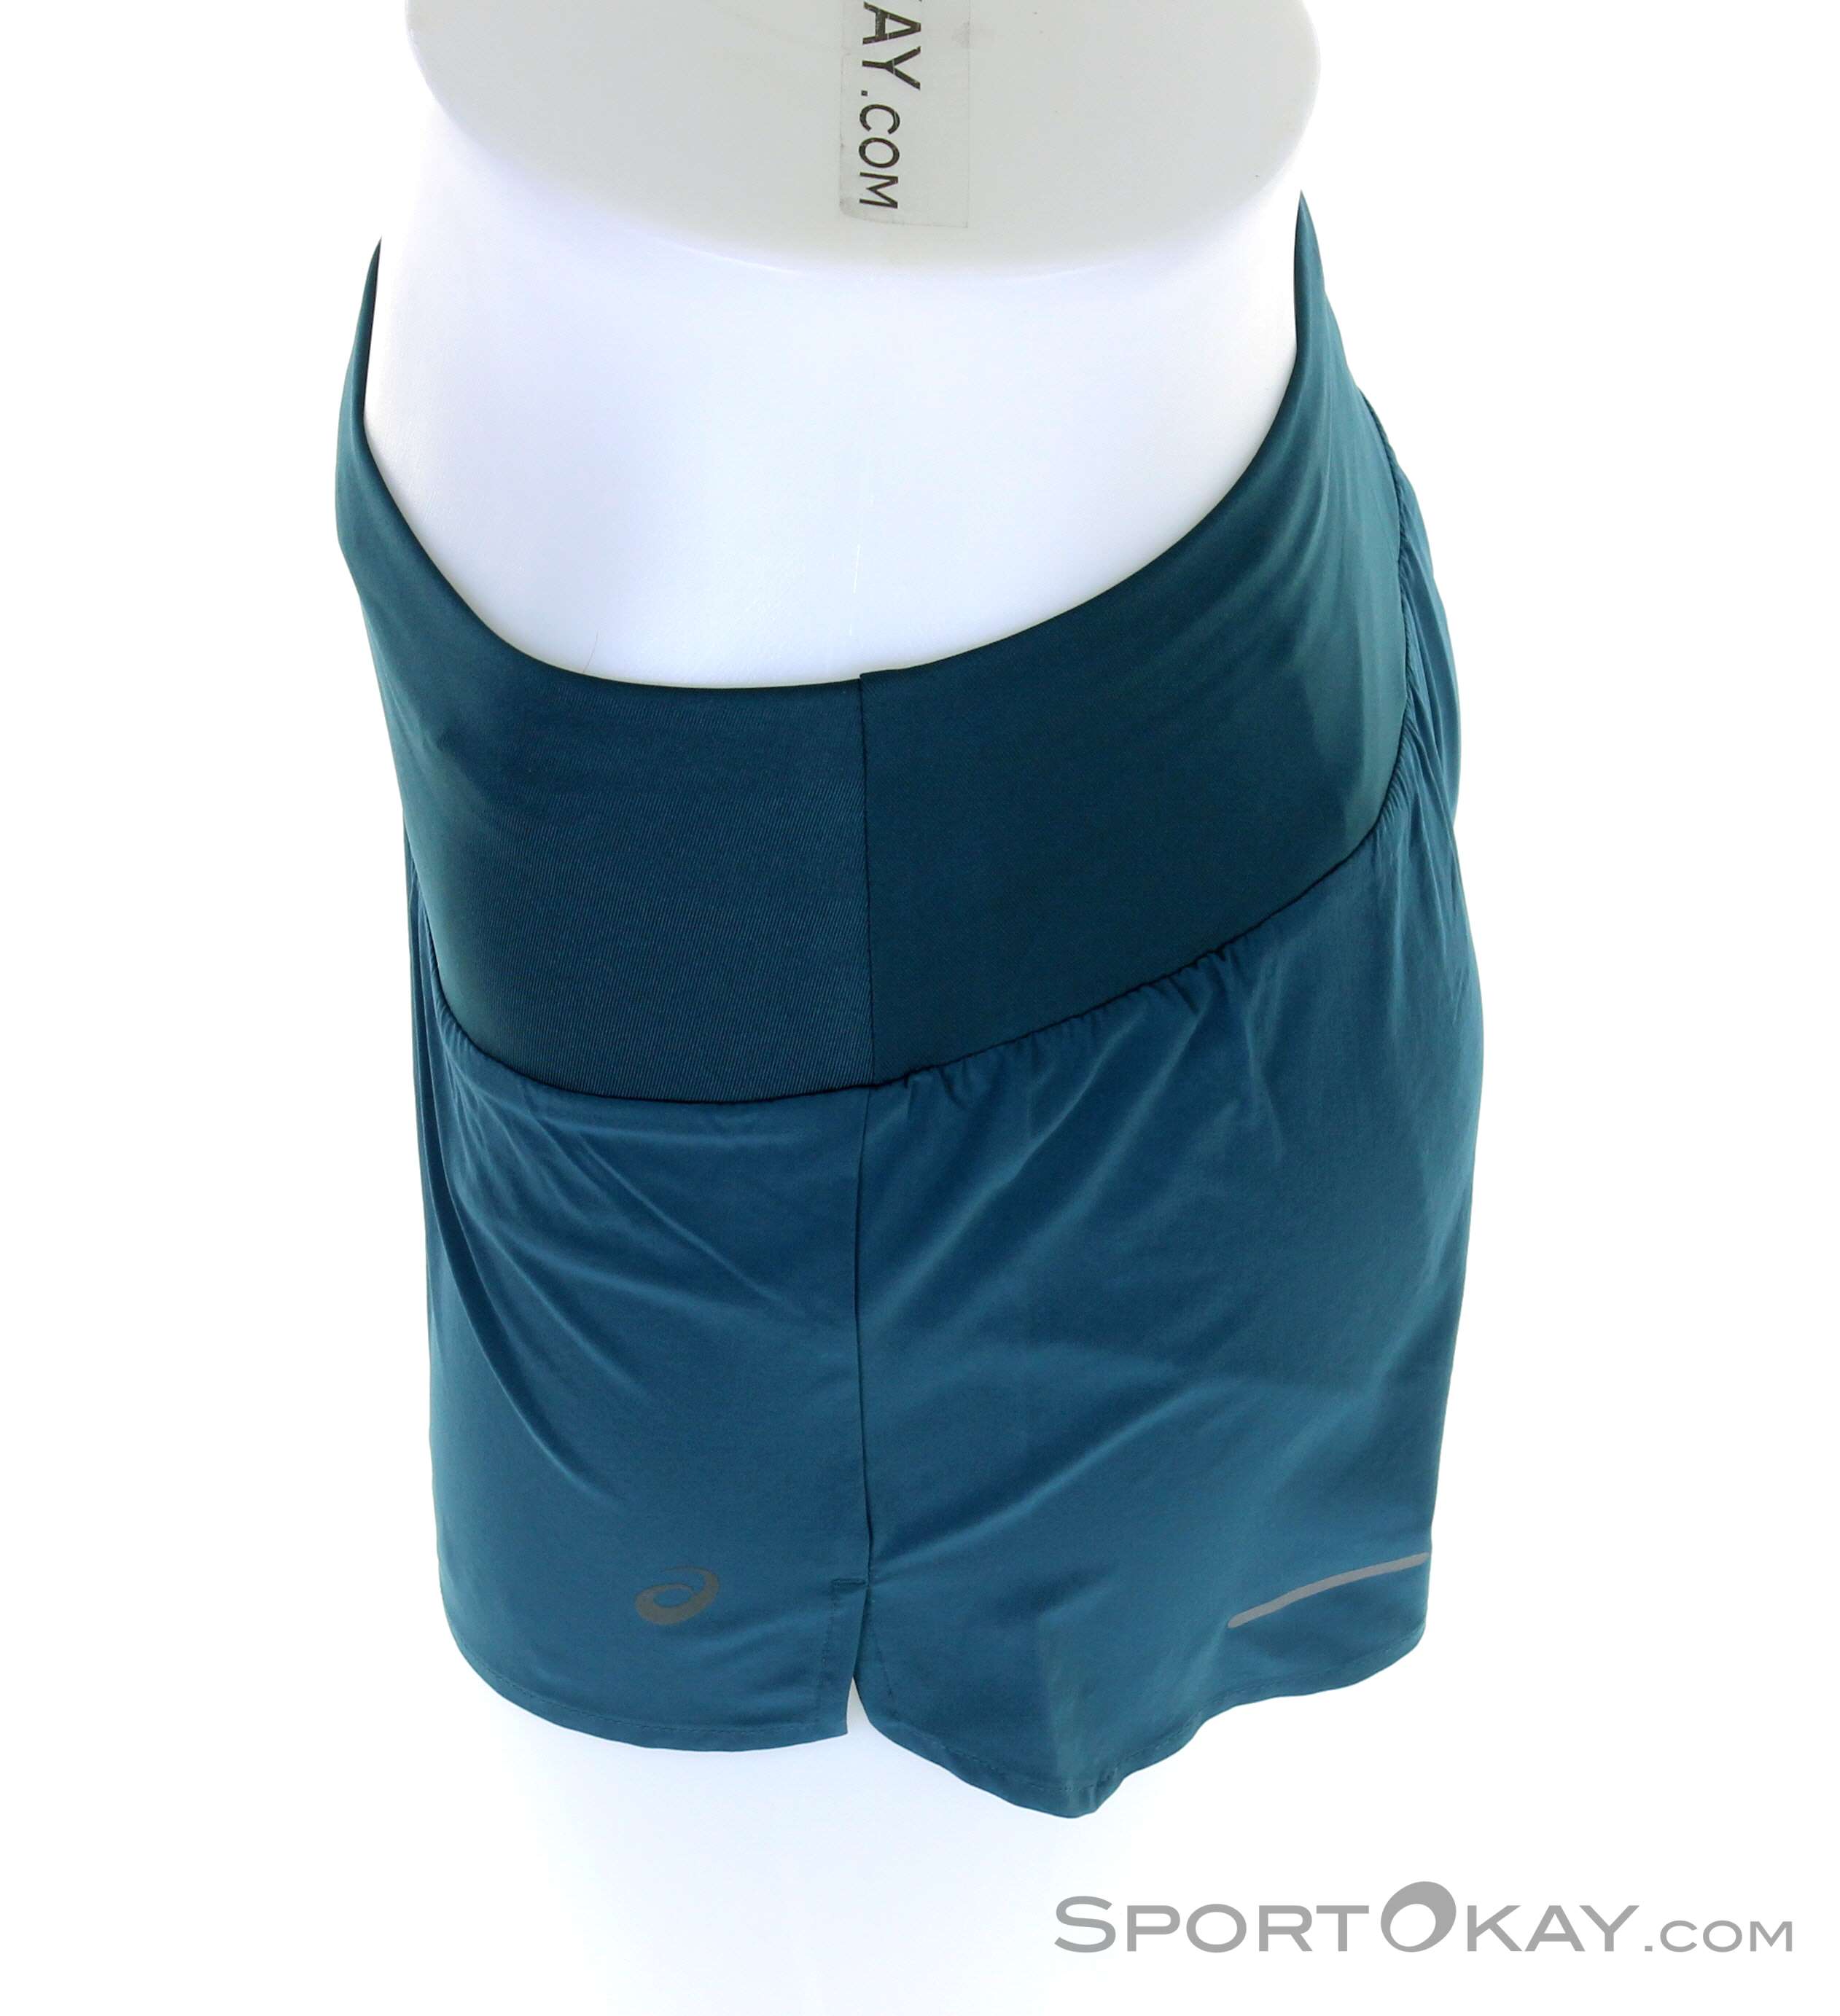 Asics Asics Road Clothing 3,5 - Pants Running Running - in Women - Running - Short All Shorts